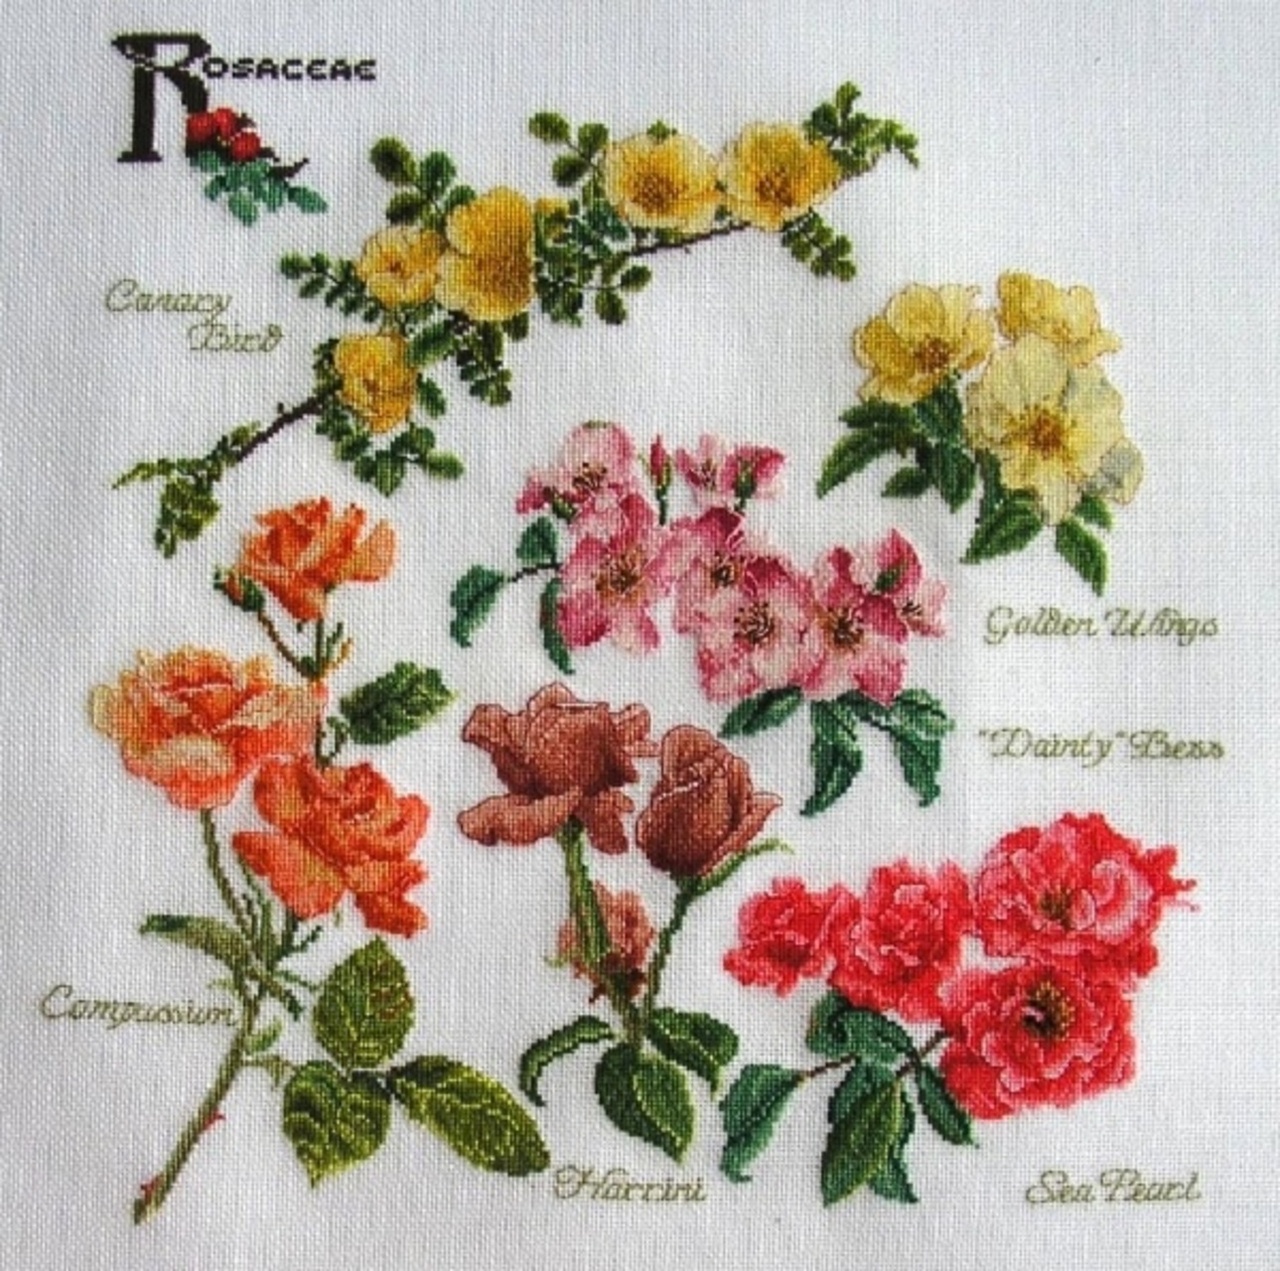 "Rosaceae" Thea Gouverner 
ткань Linda 27, 
нитки DMC (85 цветов) крестик в одну ниточку через одну нить ткани zlataya